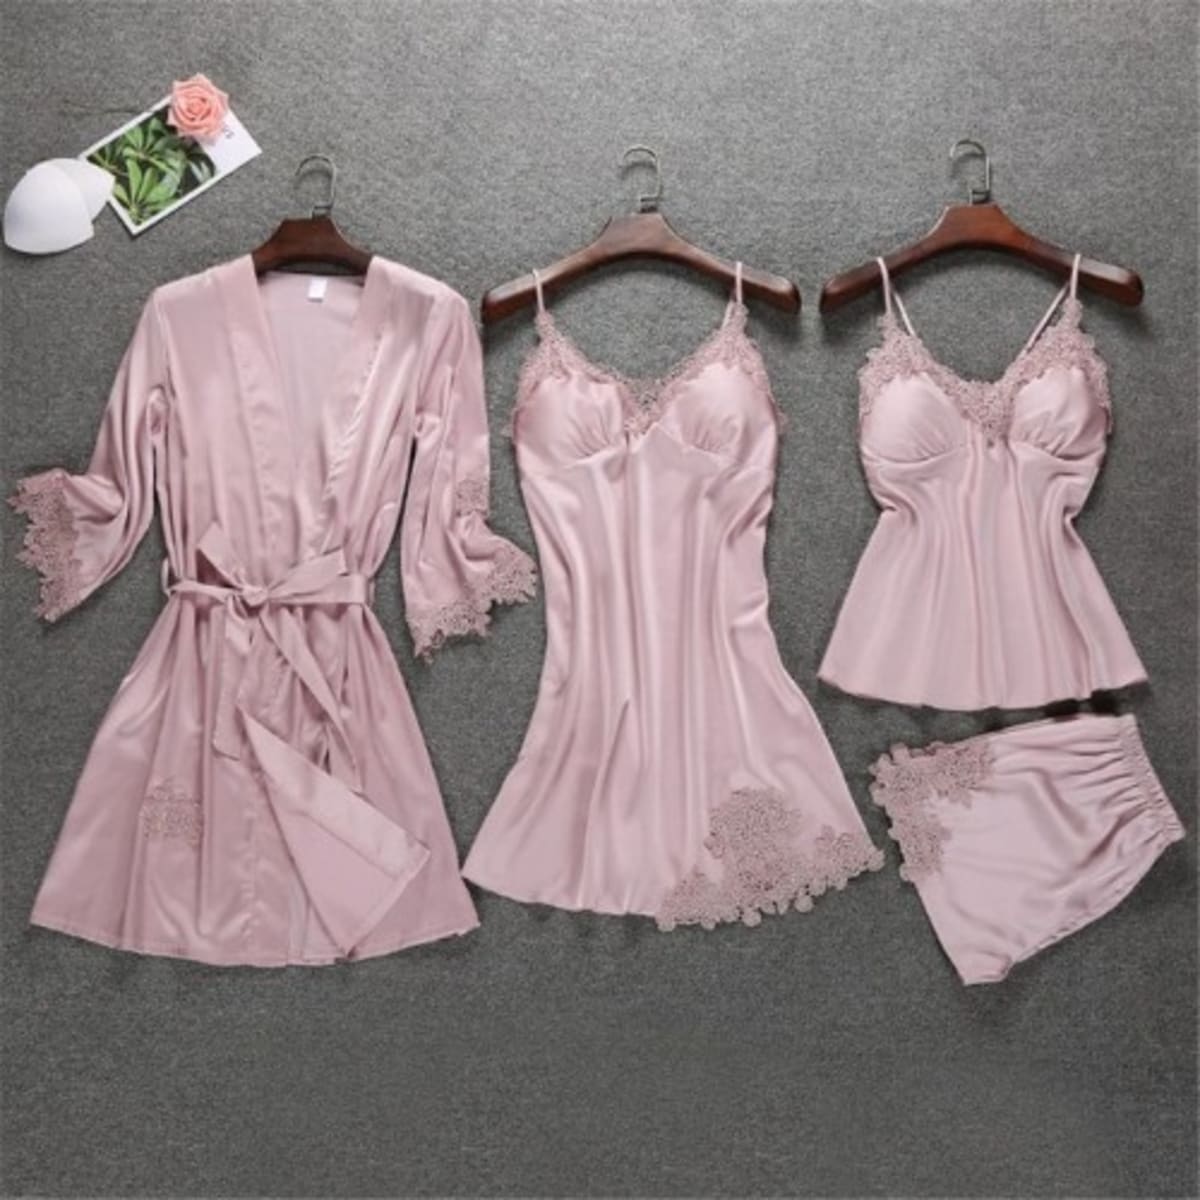 Silk Sleepwear Gowns Set Bathrobe, Robe, Night Dress For